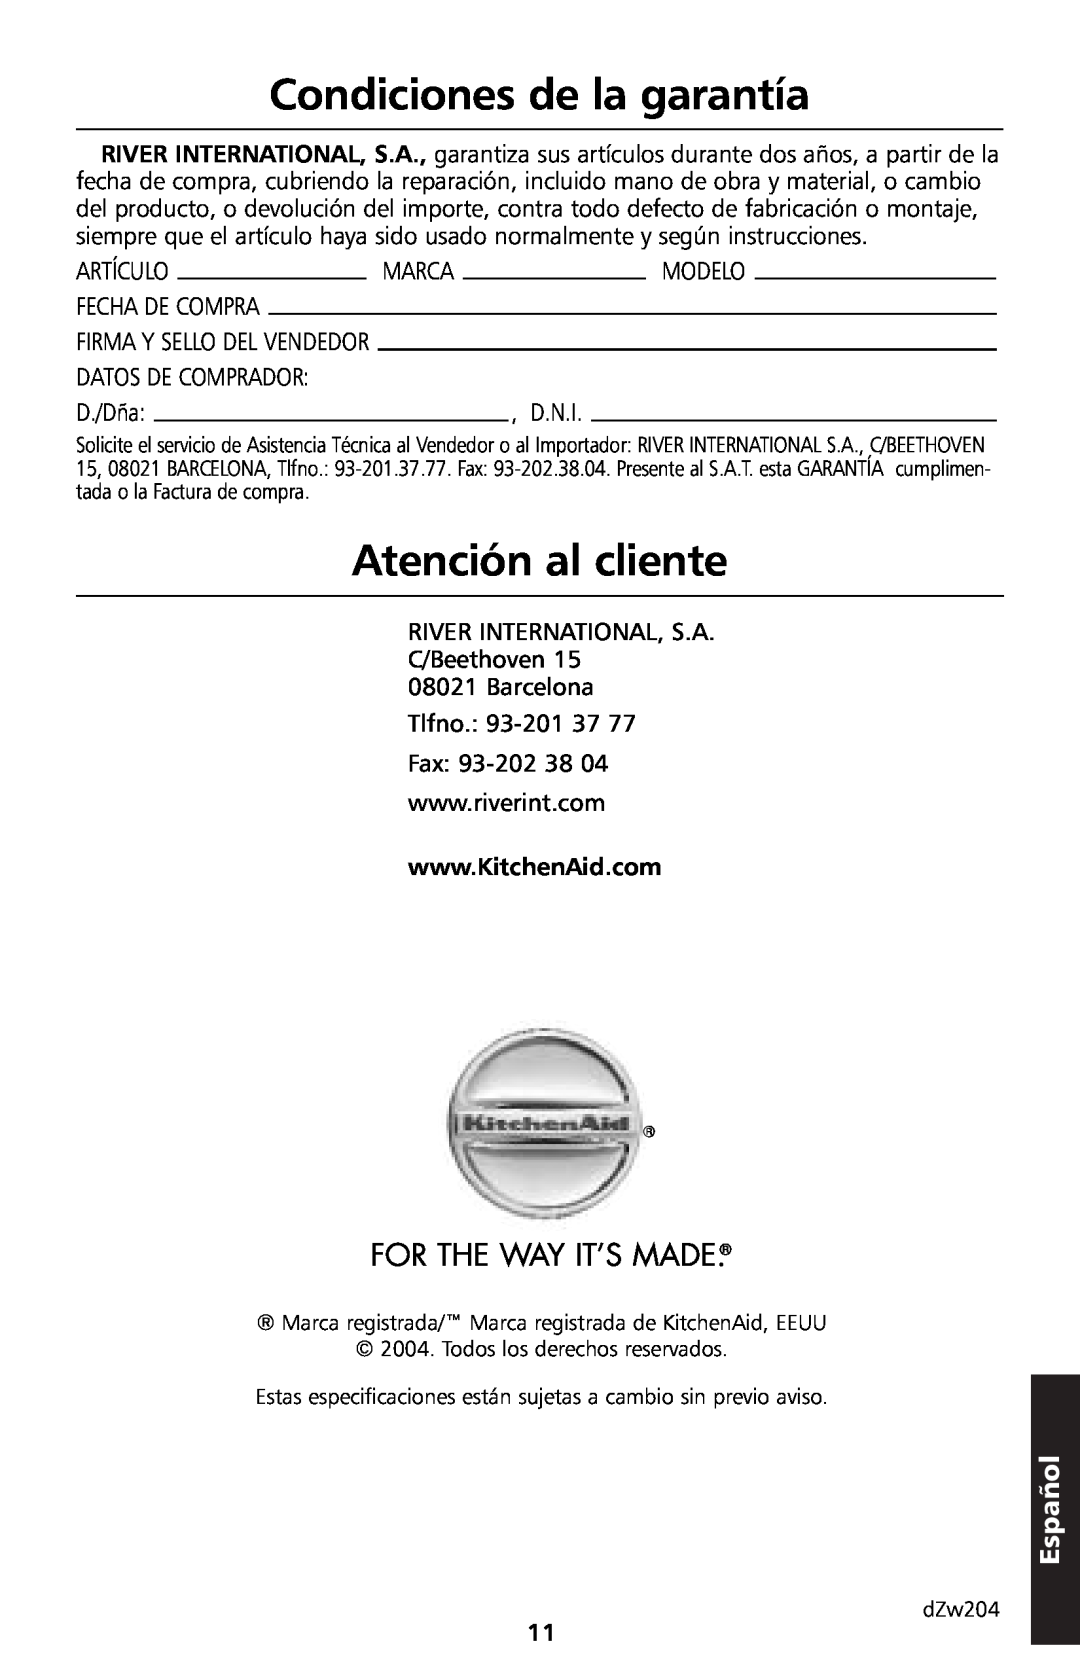 KitchenAid 5KTT890 manual Condiciones de la garantía, Atención al cliente, For The Way It’S Made, Español 